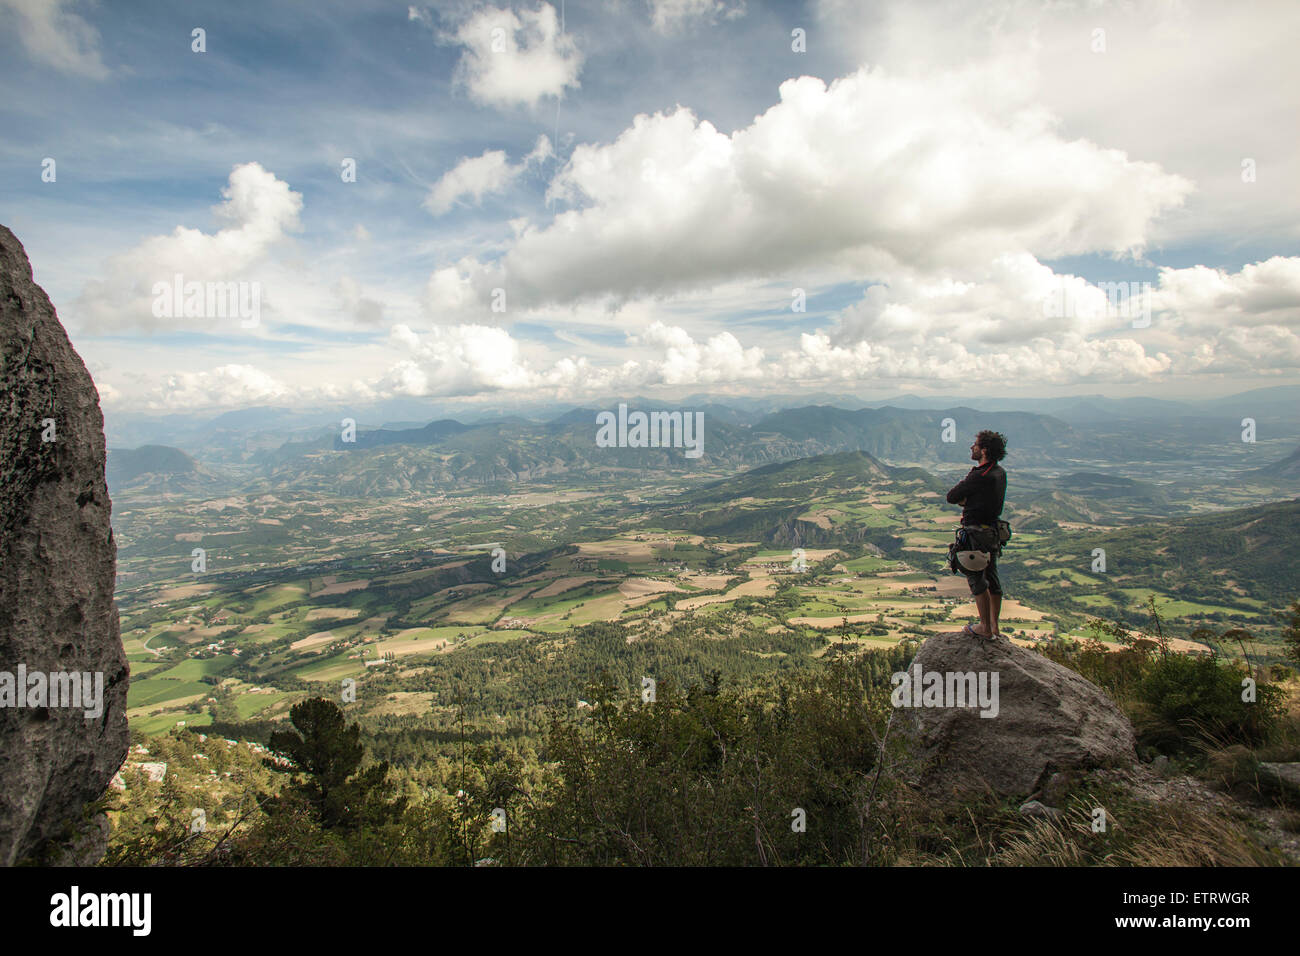 Mitte im Alter von männlichen im Berggebiet, Mensch und Natur, Stärke, trekking Stockfoto